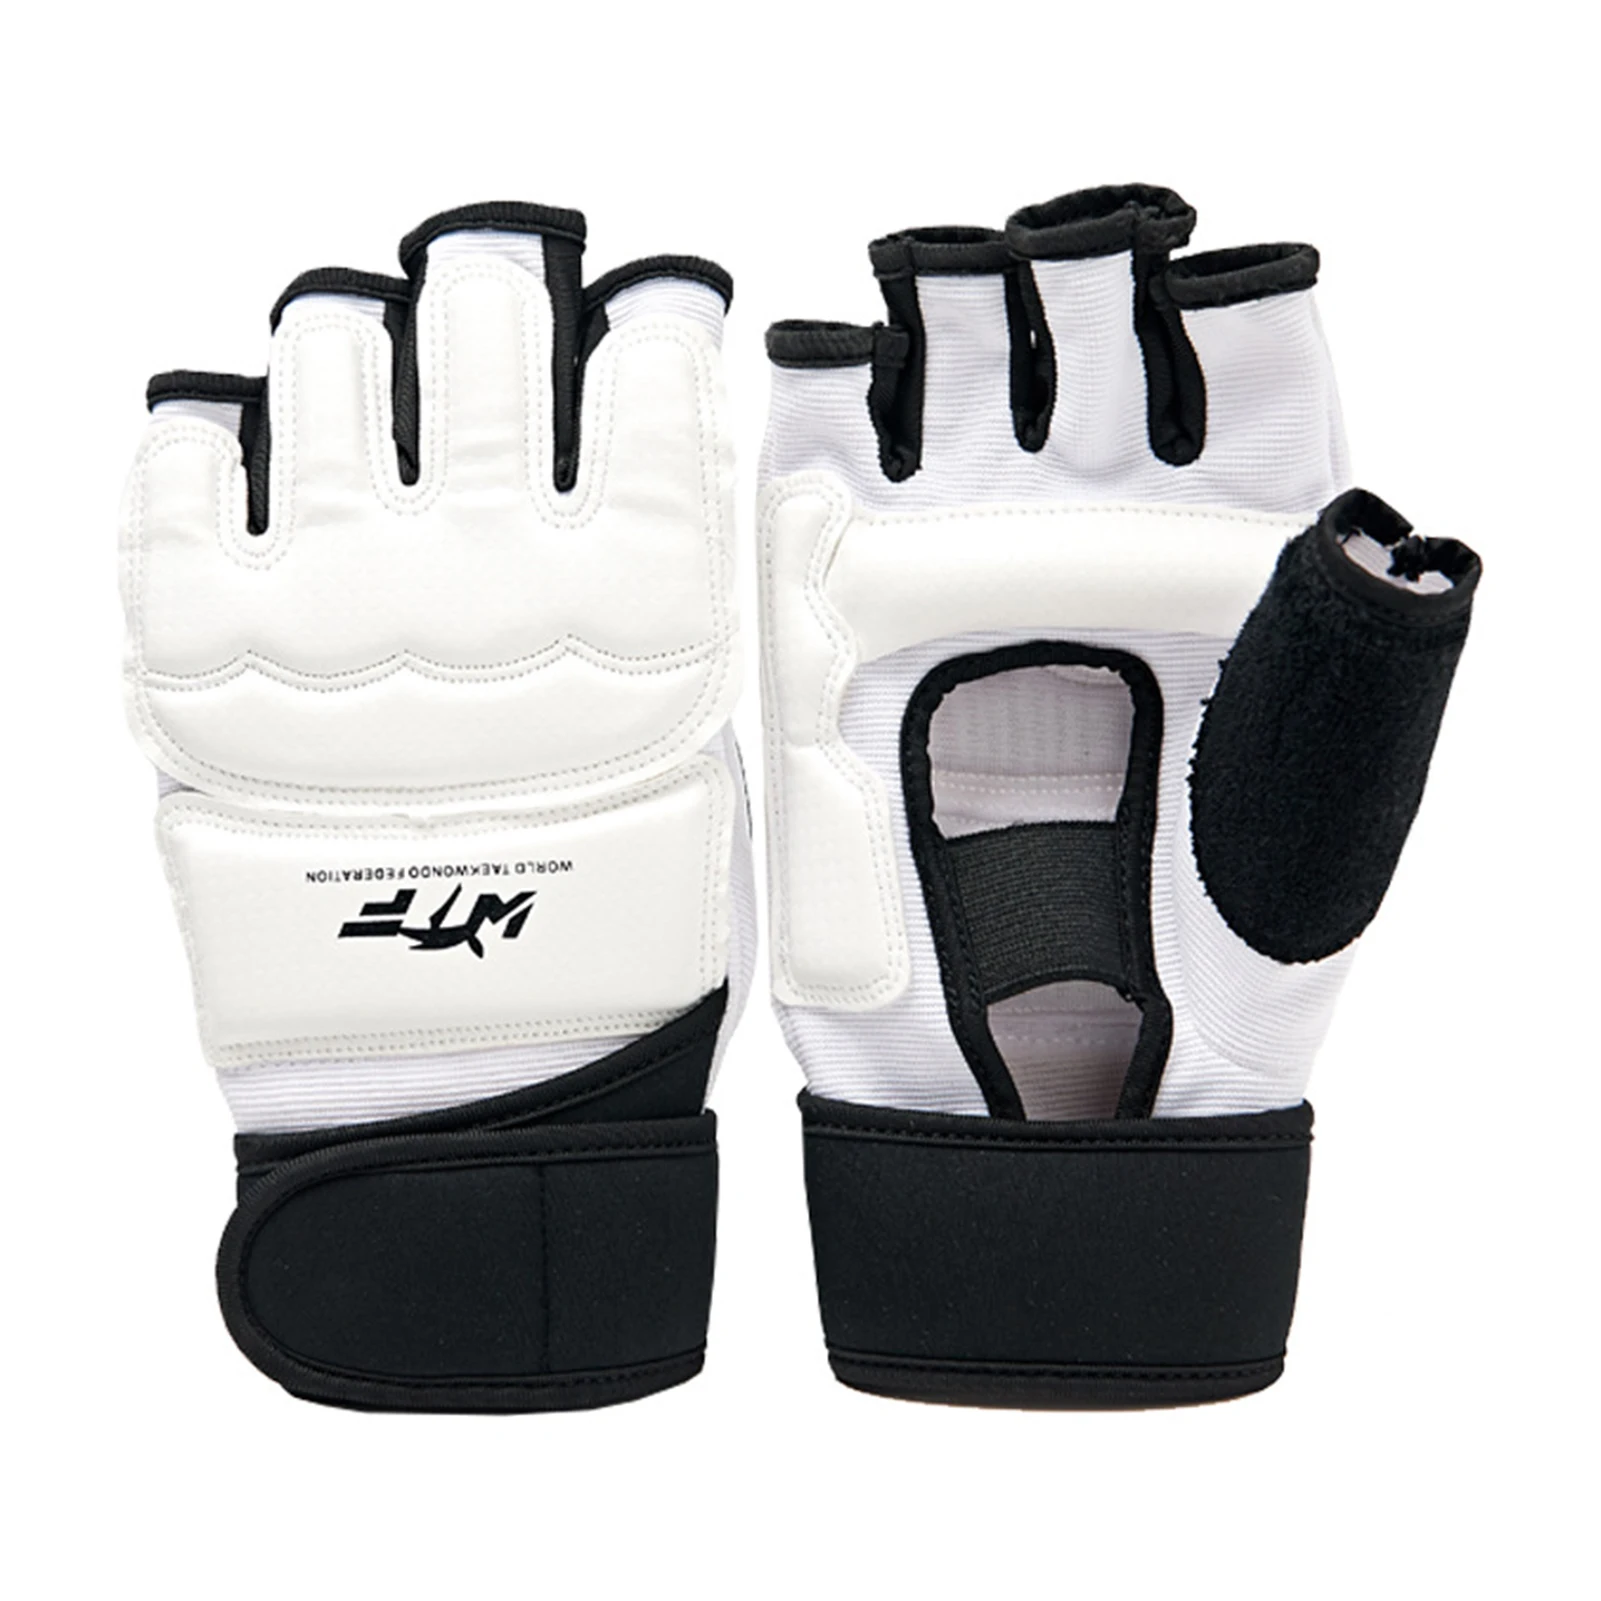 

Боксерские перчатки на полпальца, детские кожаные перчатки, боксерский мешок для карате, для тхэквондо, MMA, тайские тренировочные перчатки для кикбоксинга